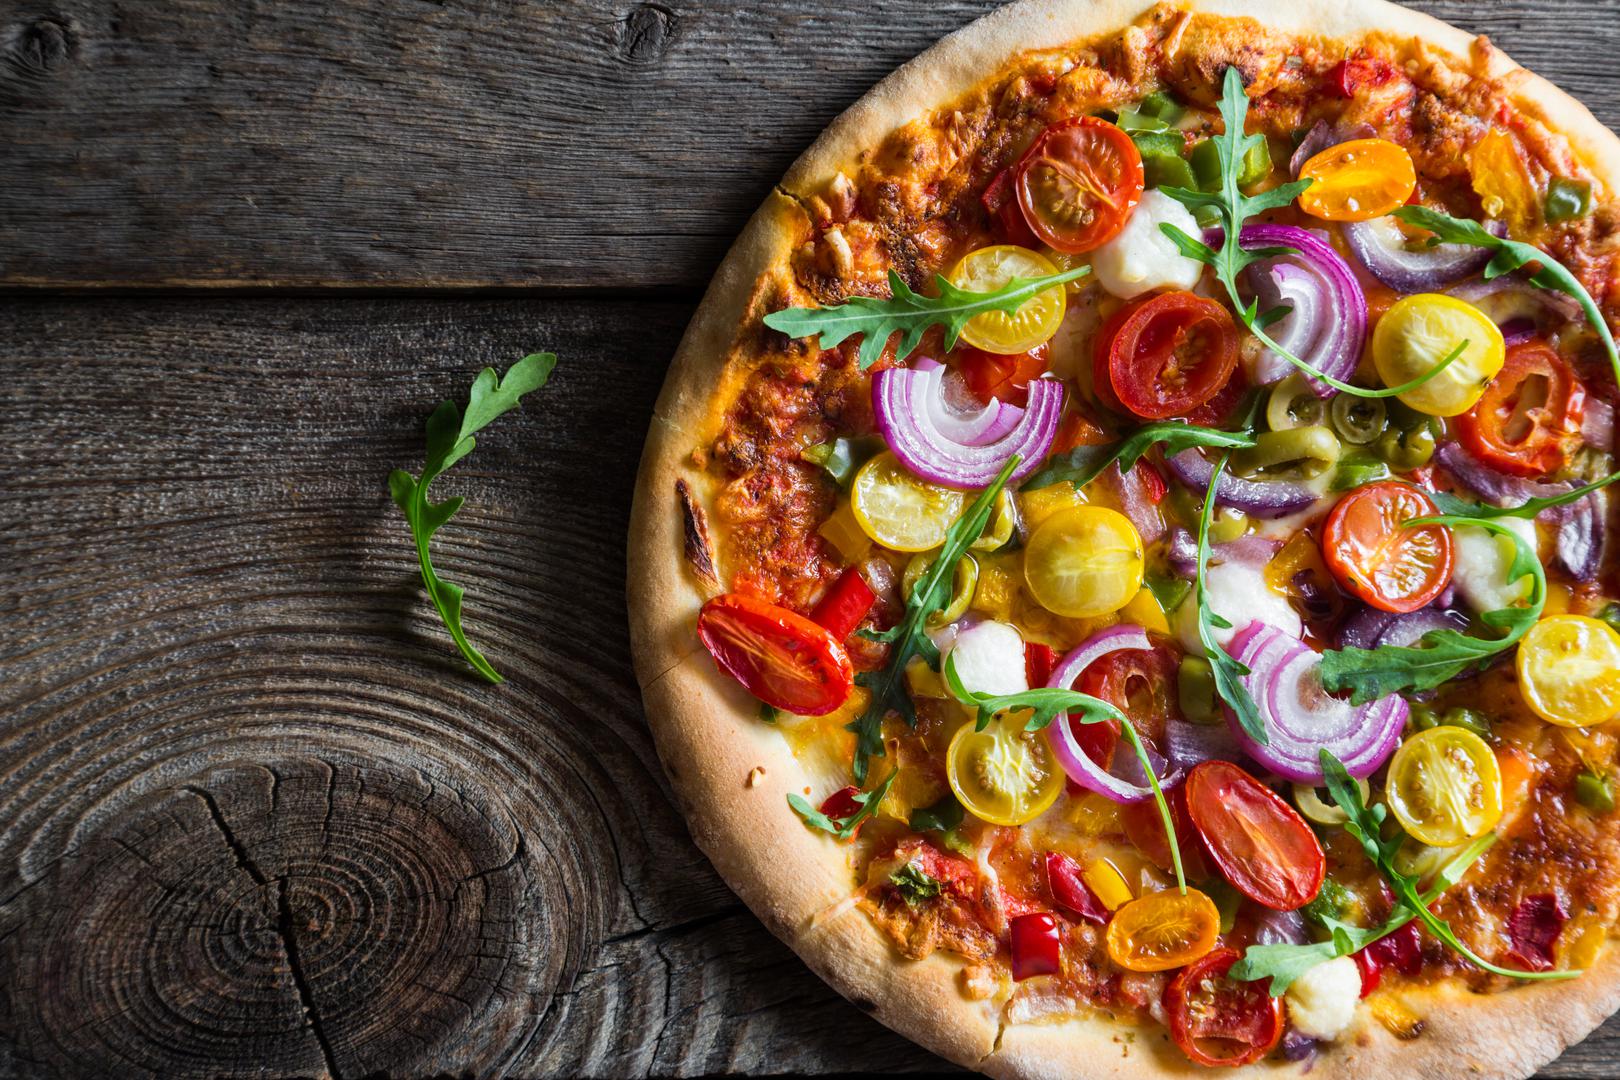 Napravite malo zdraviju verziju pizze - tijesto od integralnog brašna, sir s manje masti i kvalitetna šunka, te hrpa povrća osigurat će vam cjelovit i zdrav obrok.